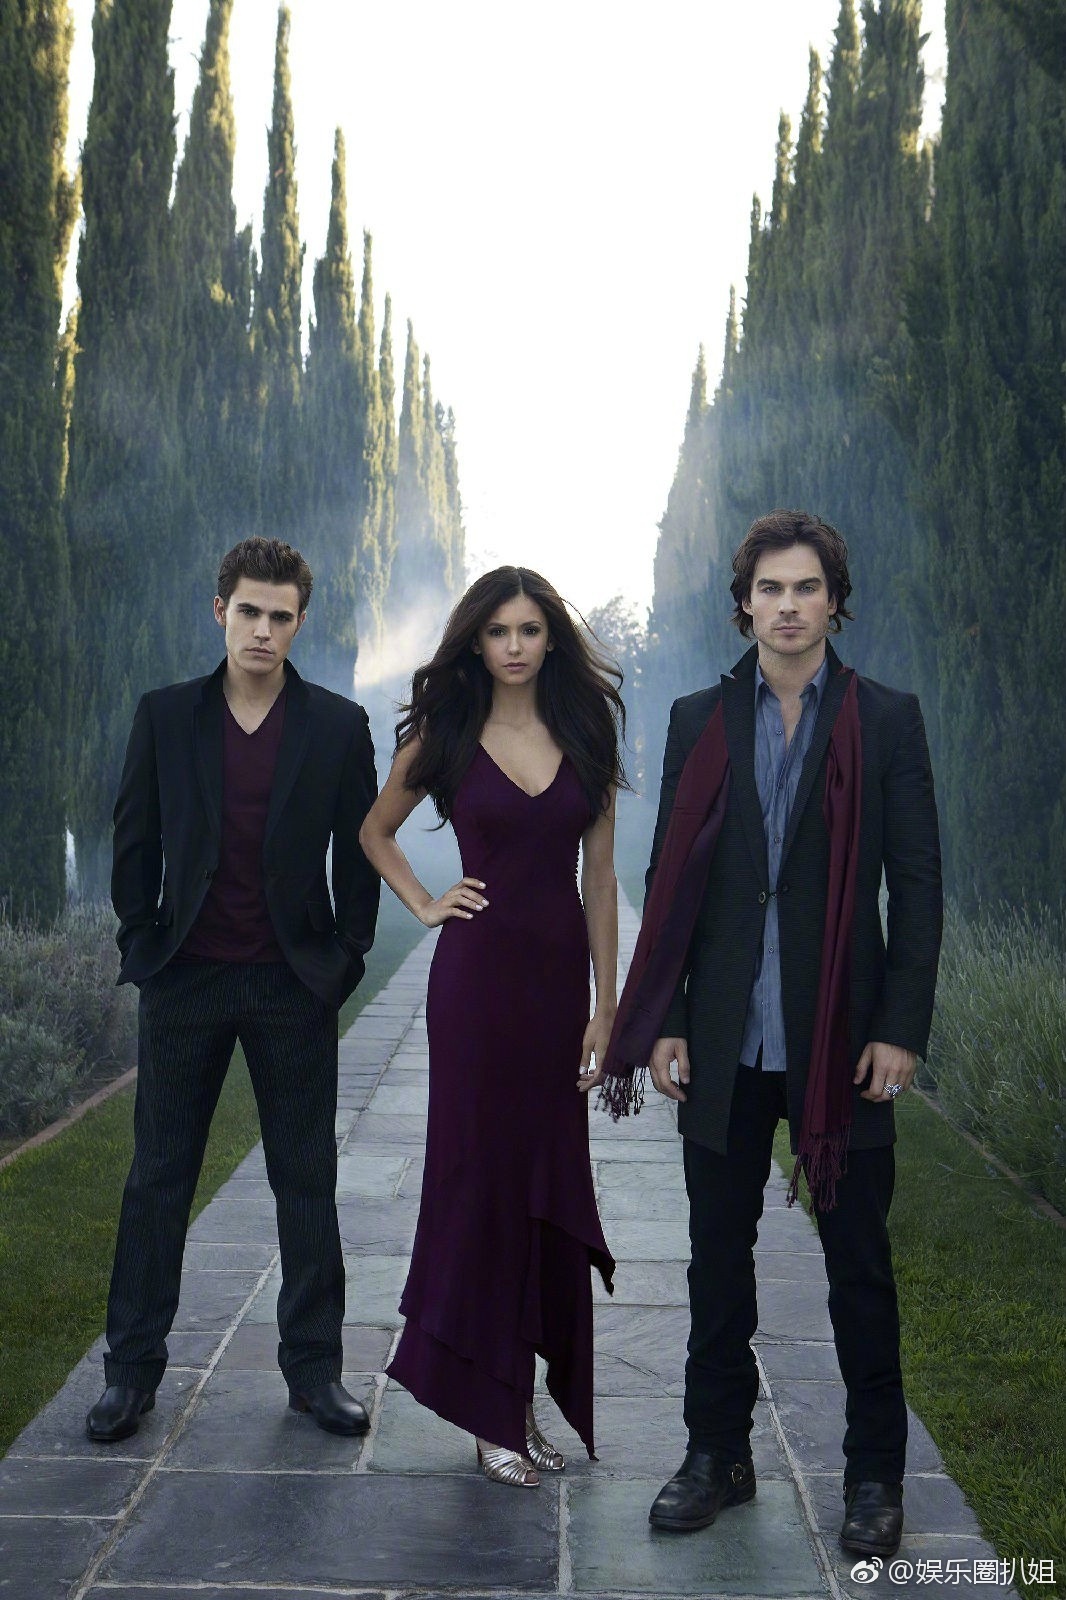 《吸血鬼日记》第八季发布新剧照,Stefan & C